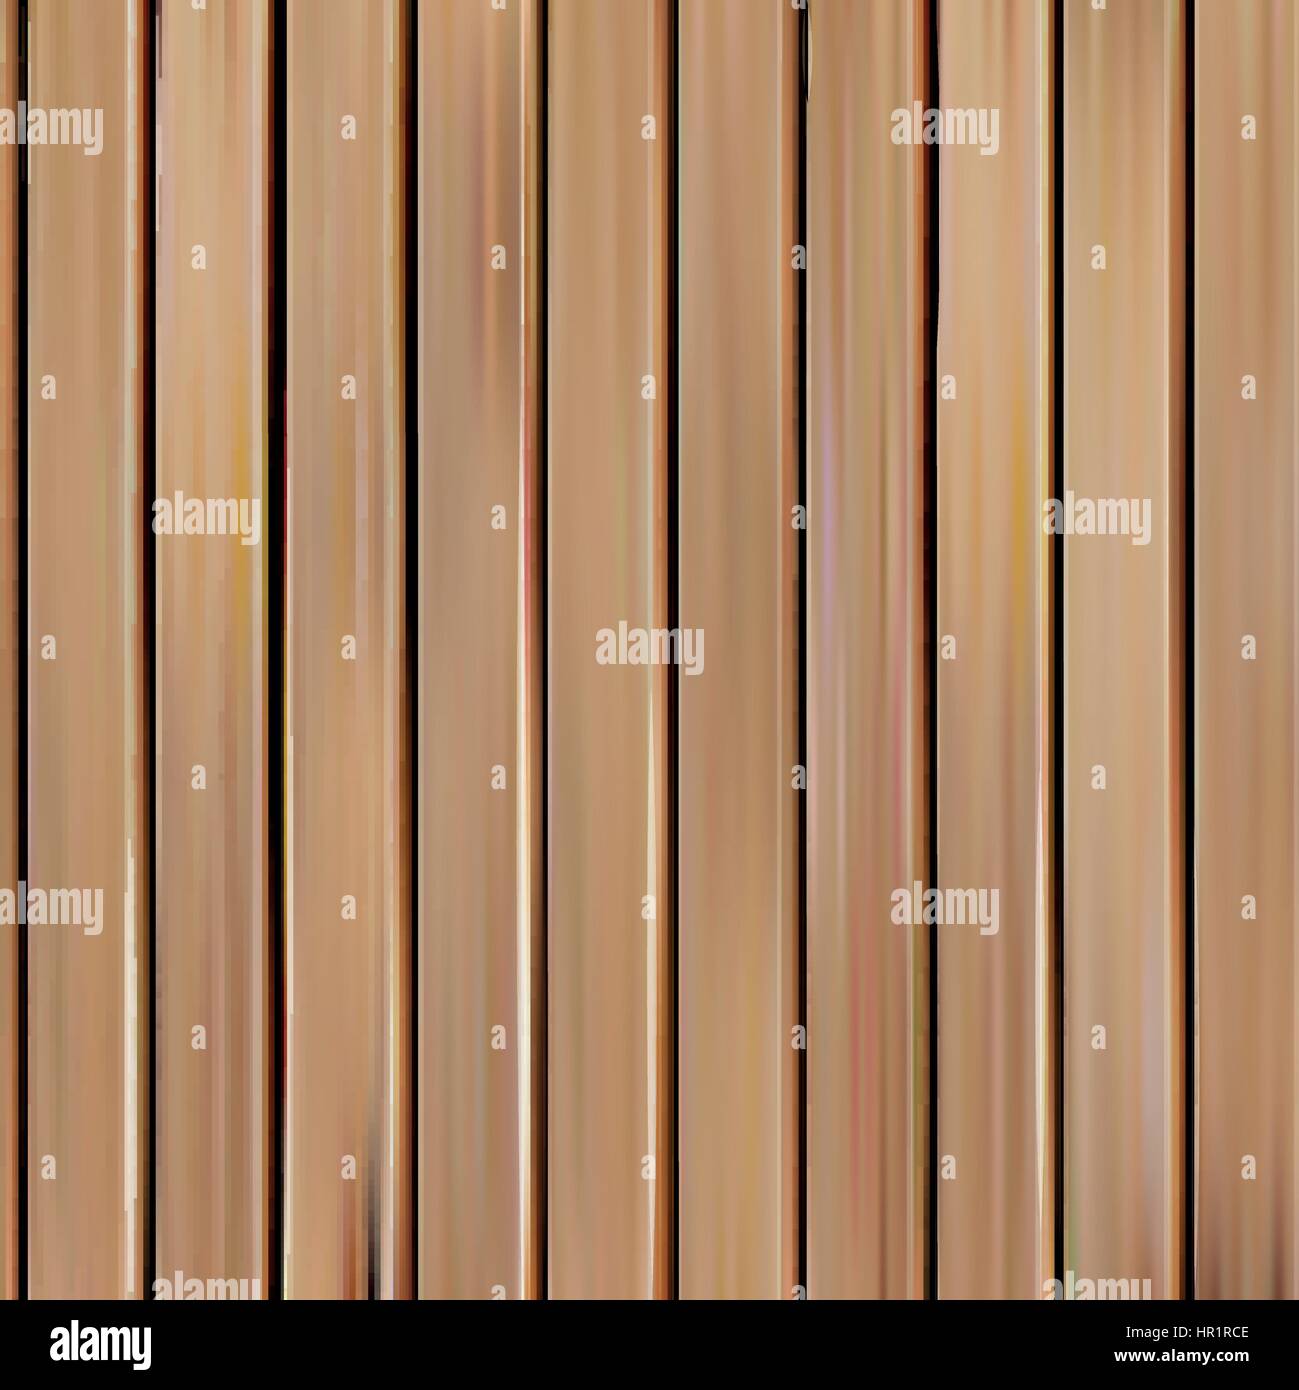 Isolato realistico seamless texture di legno illustrazione vettoriale, schede verticali sullo sfondo. Illustrazione Vettoriale